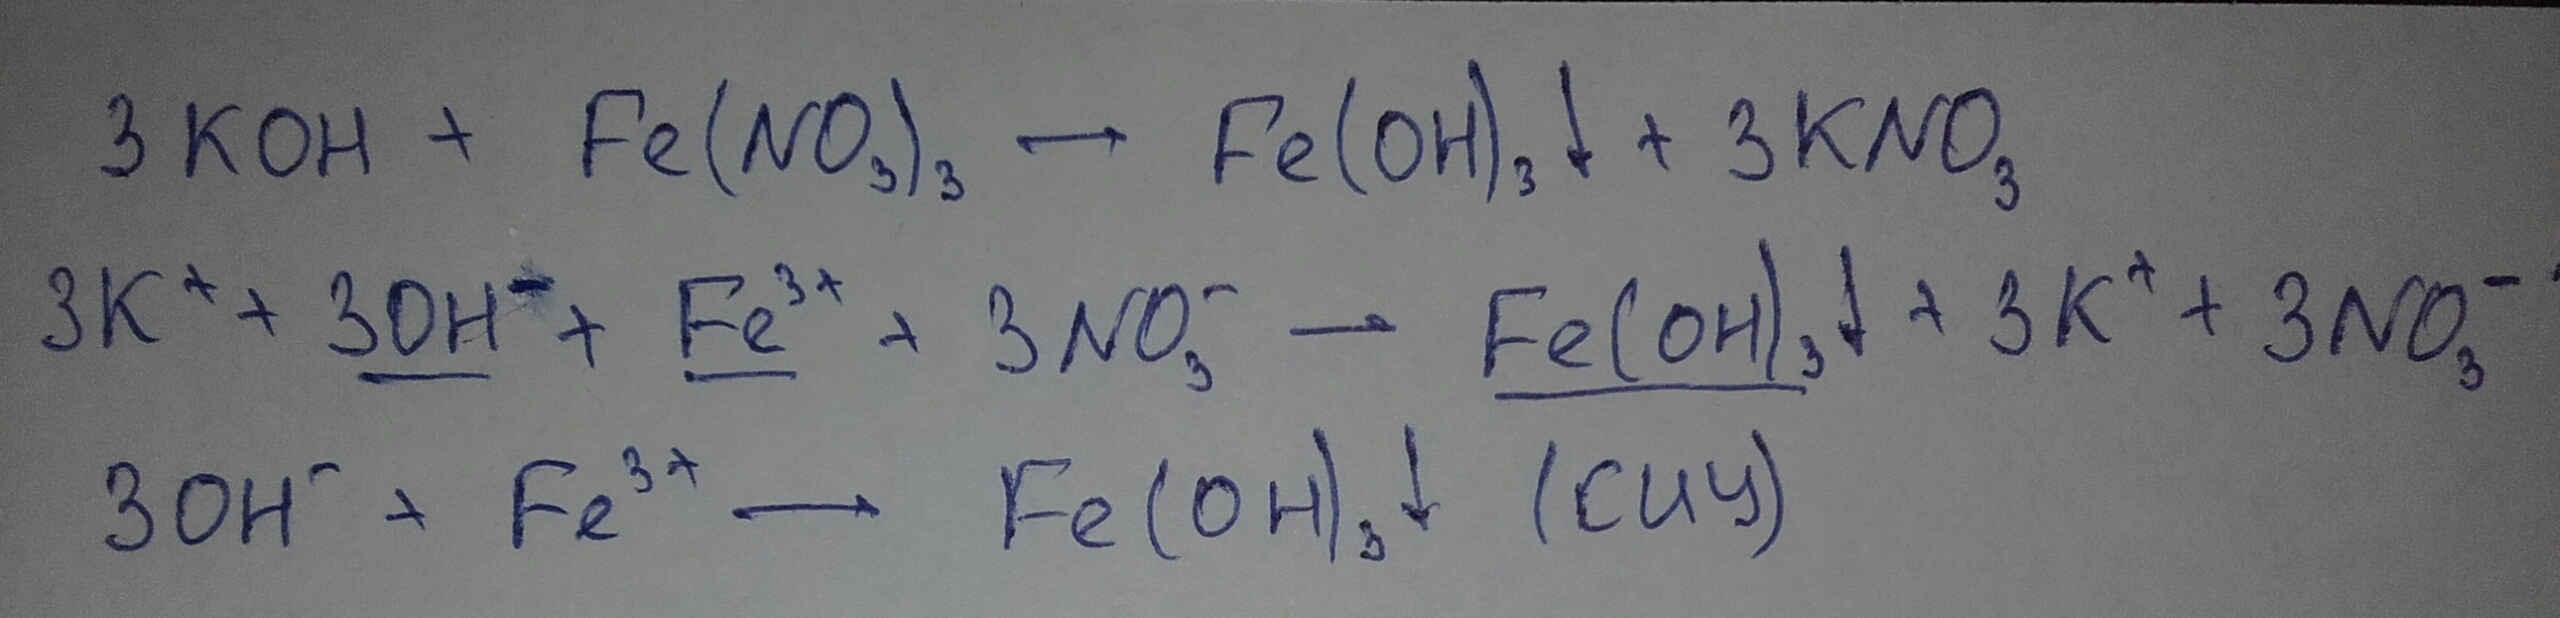 Zn kno3 h2o. Fe(no3)3 + Koh → Fe(Oh)3 + kno3. Fe no3 3 Koh. Fe no3 3 Koh ионное уравнение. Fe no3 3 Koh ионное уравнение полное и сокращенное.